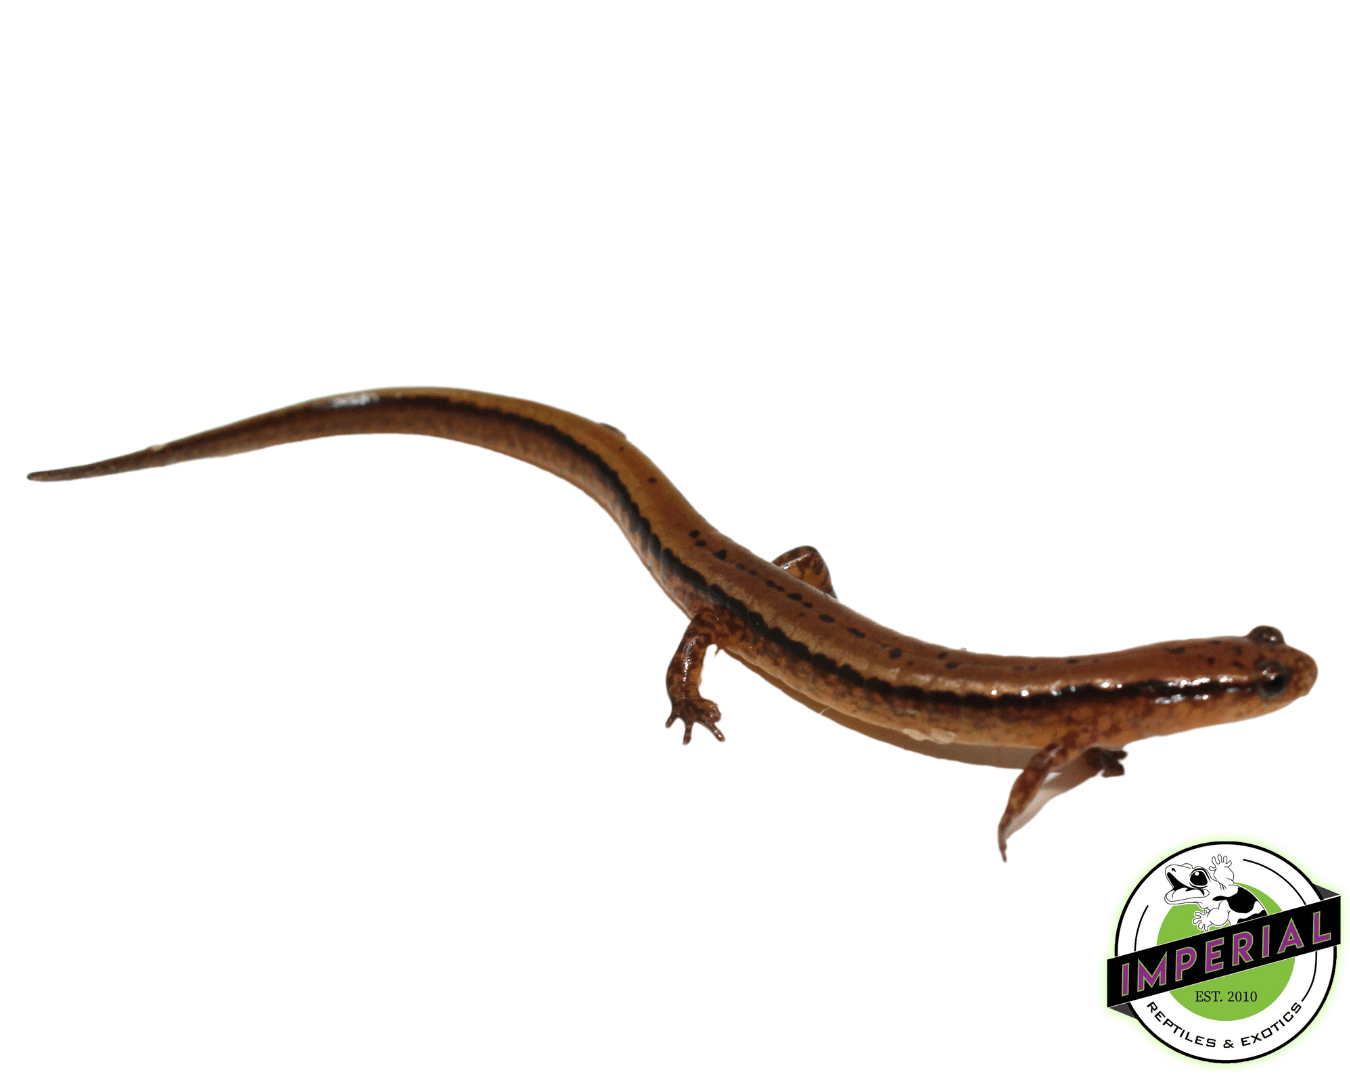 salamander for sale online, buy cheap amphibians near me